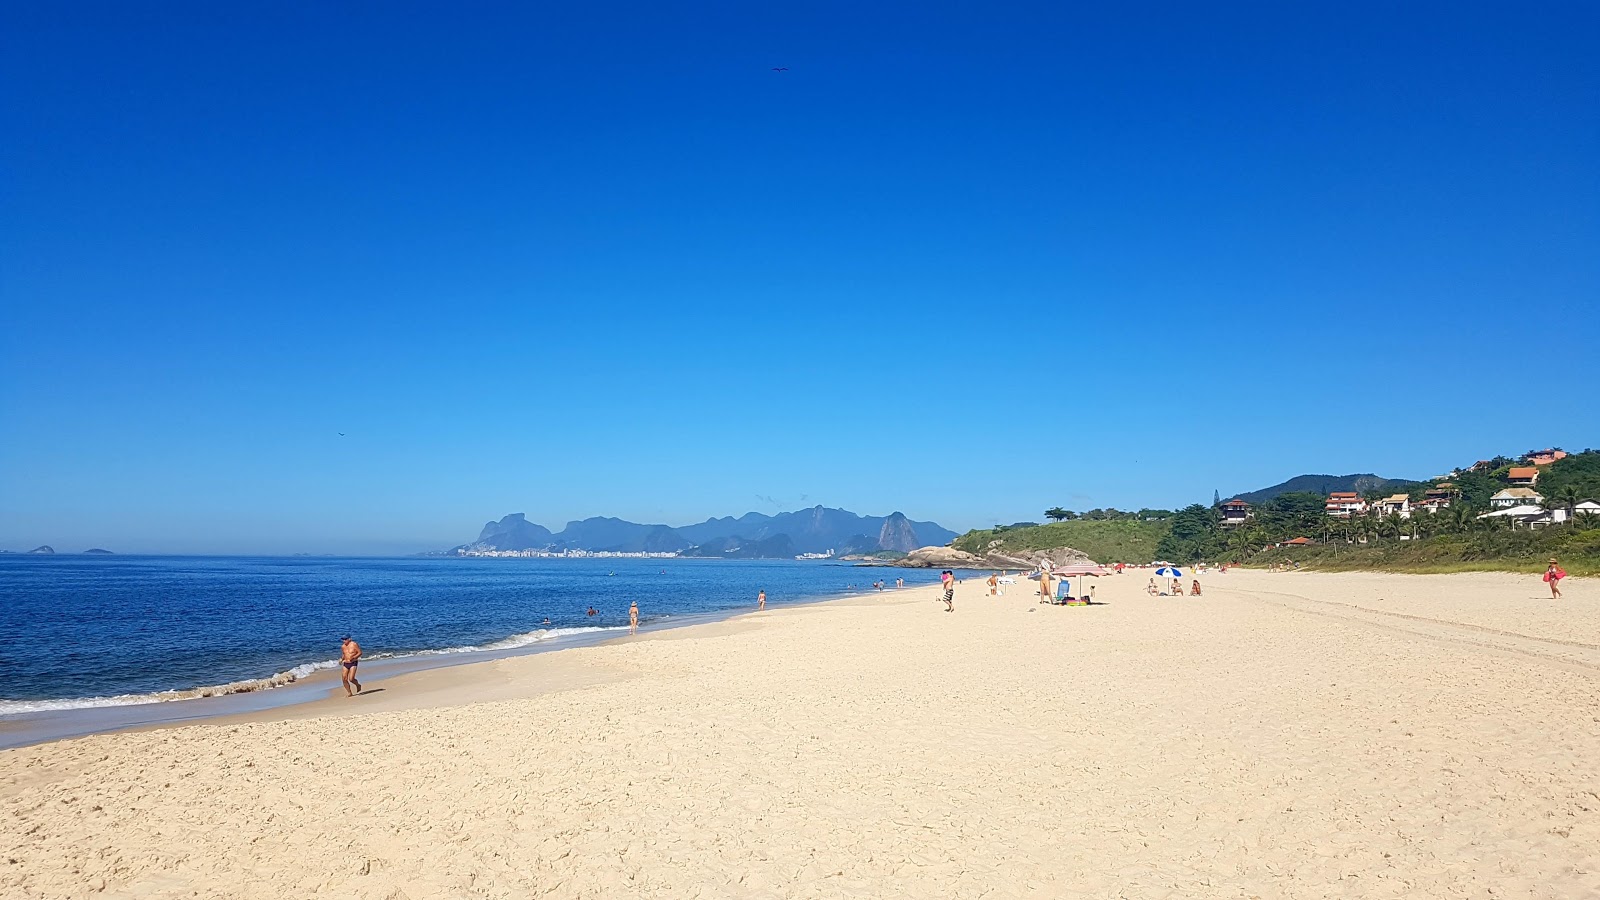 Praia de Camboinhas的照片 带有碧绿色纯水表面